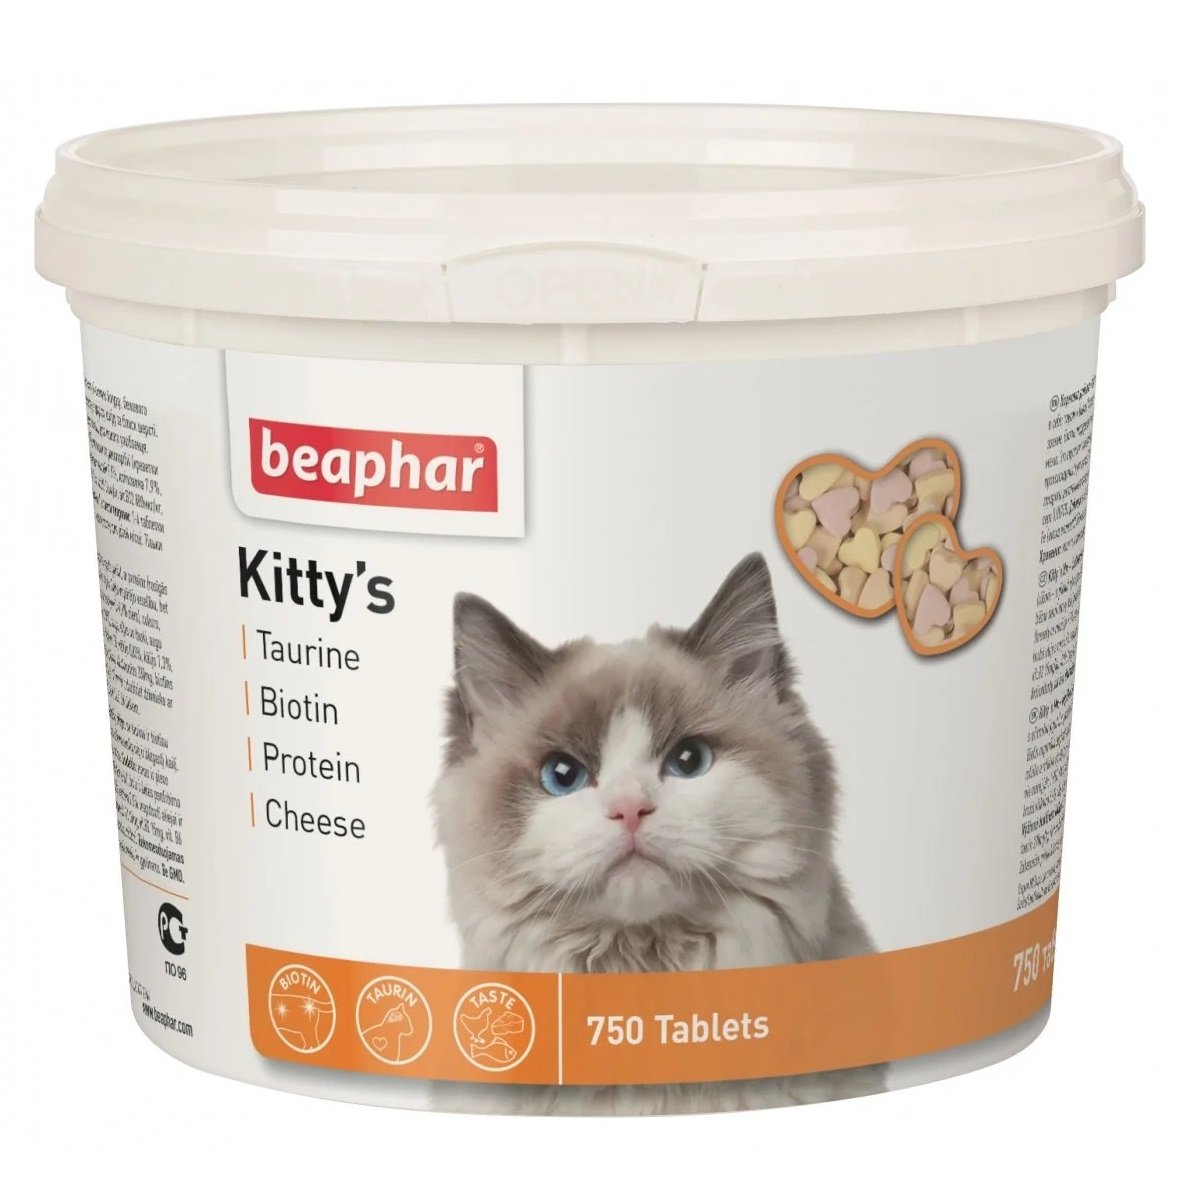 Вітамінізовані ласощі Beaphar Kitty's Mix для котів з таурином та біотином, сиром та протеїном, 750 т - фото 1